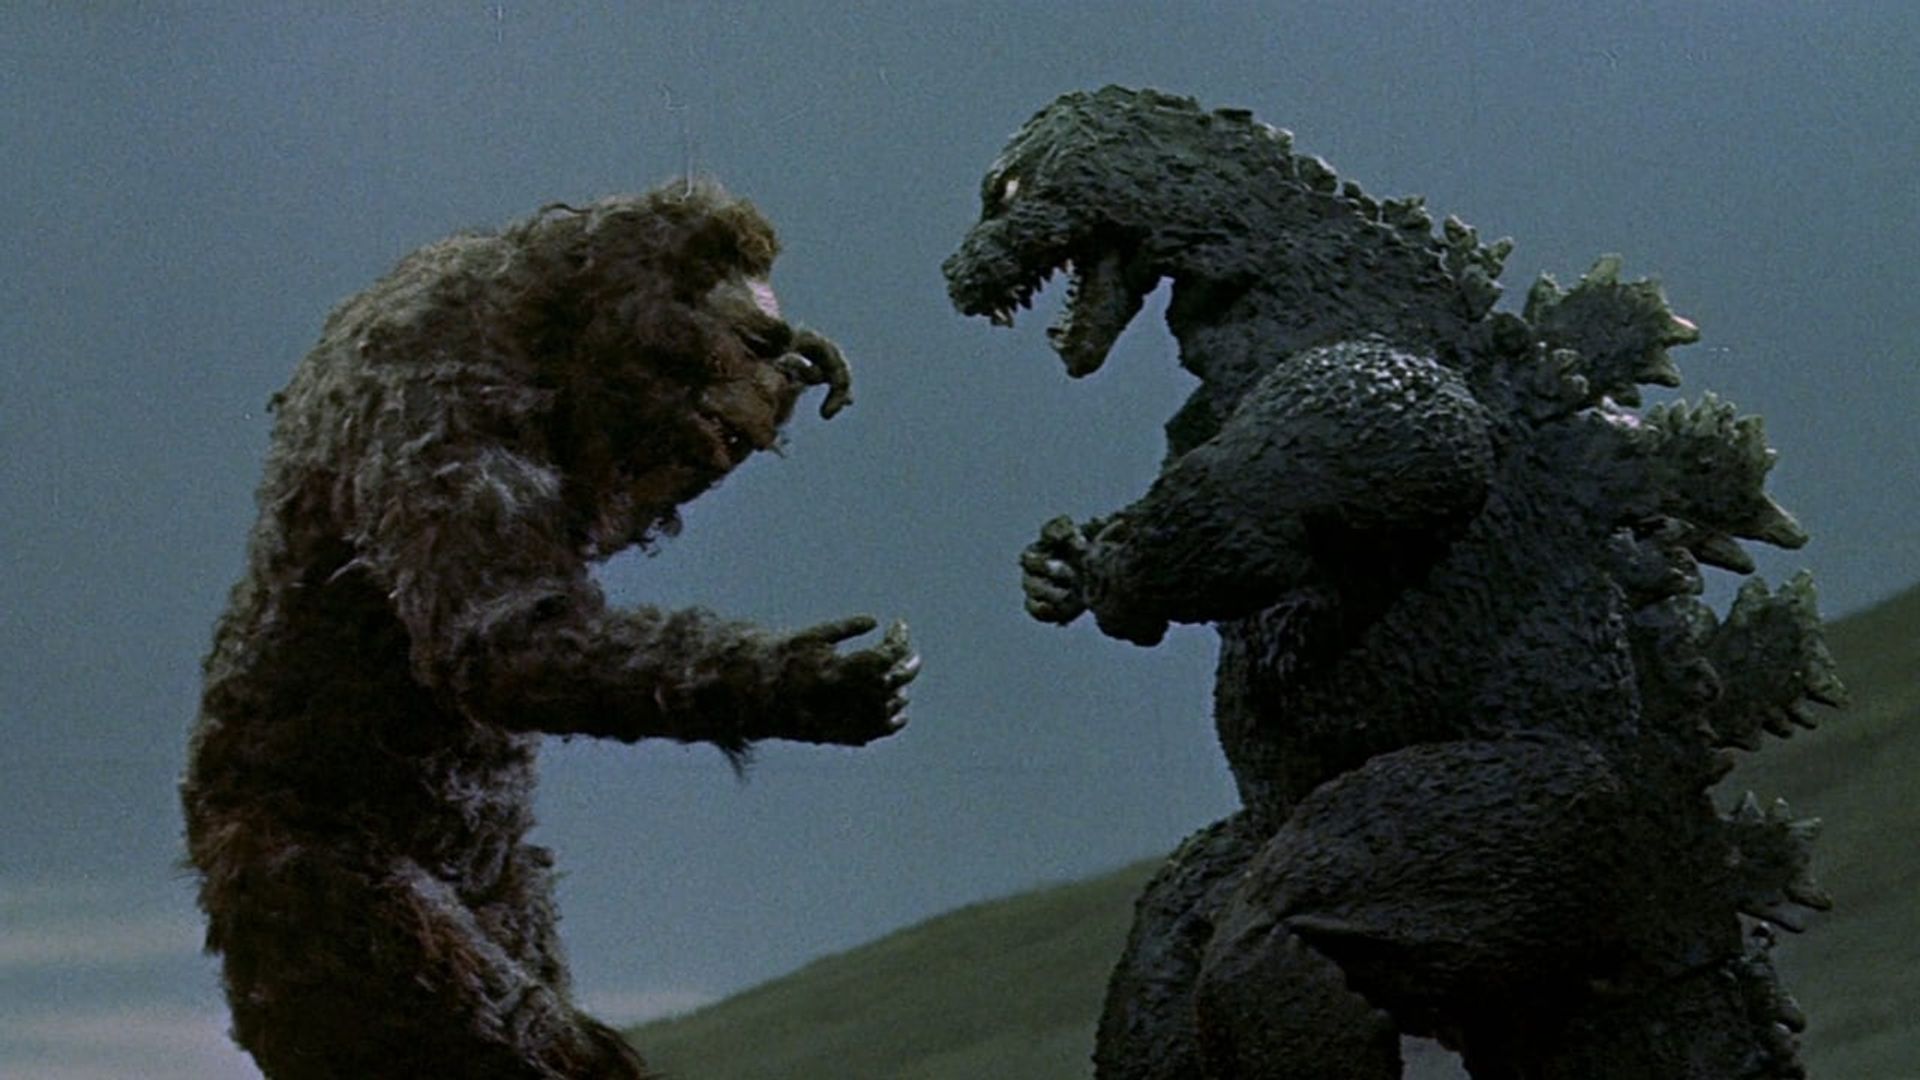 King Kong vs. Godzilla background